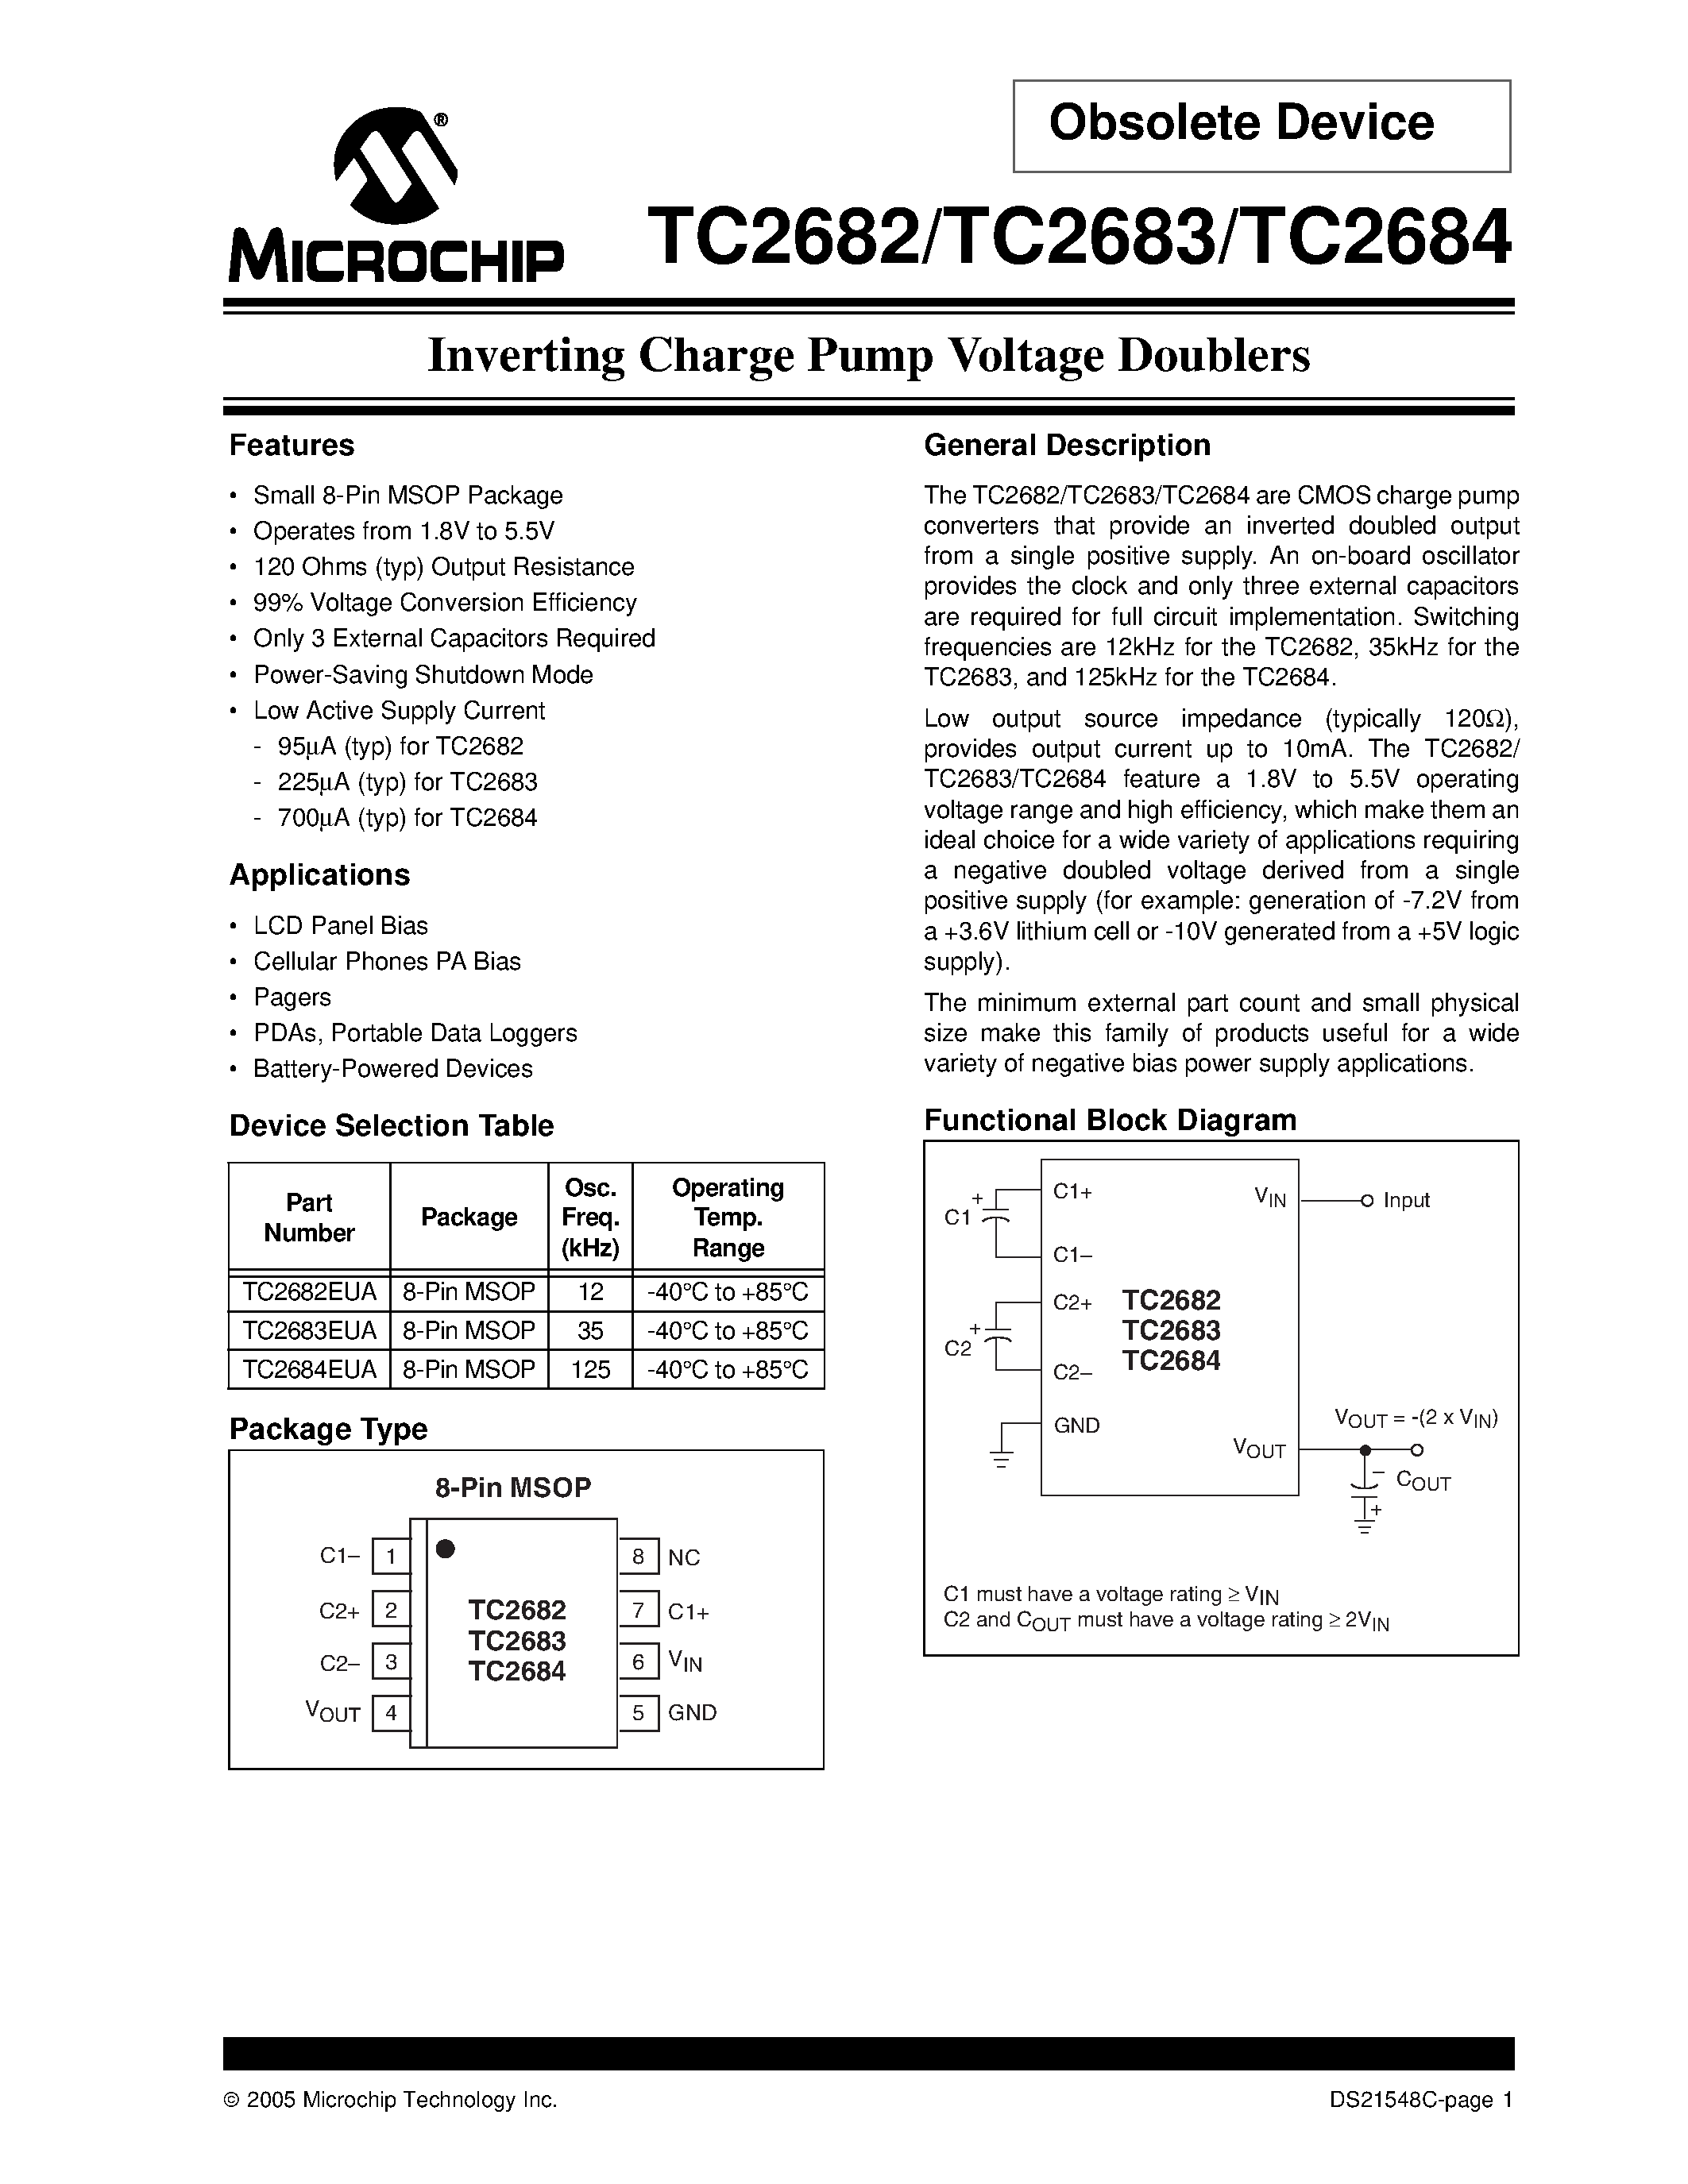 Даташит TC2682 - (TC2682 - TC2684) Inverting Charge Pump Voltage Doublers страница 1